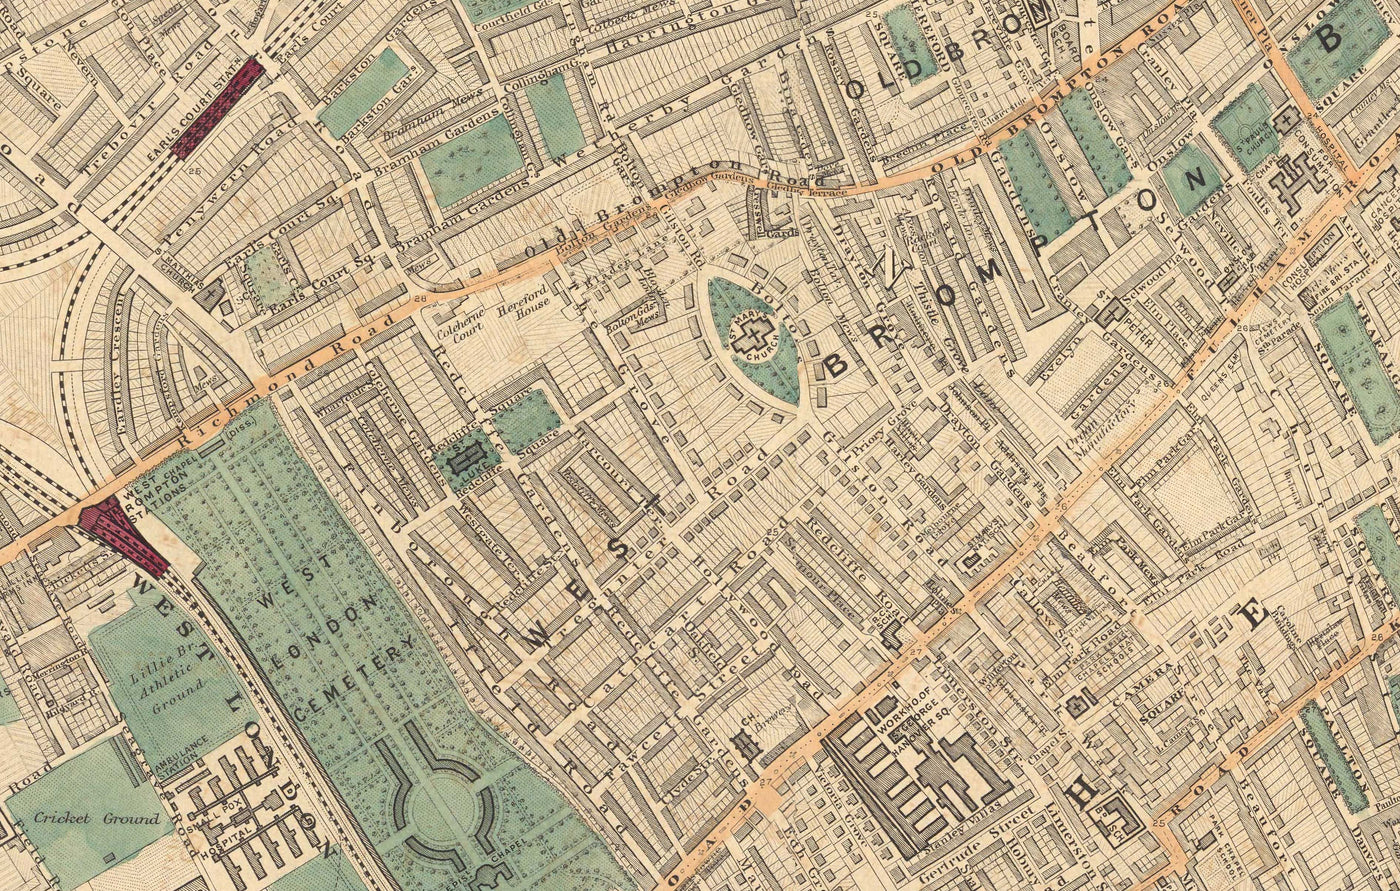 Alte Farbkarte von West London, 1891 - Fulham, Brompton, Battersea, Hammersmith - SW6, SW10, SW15, SW18, SW10, SW11, SW5, W6 W14